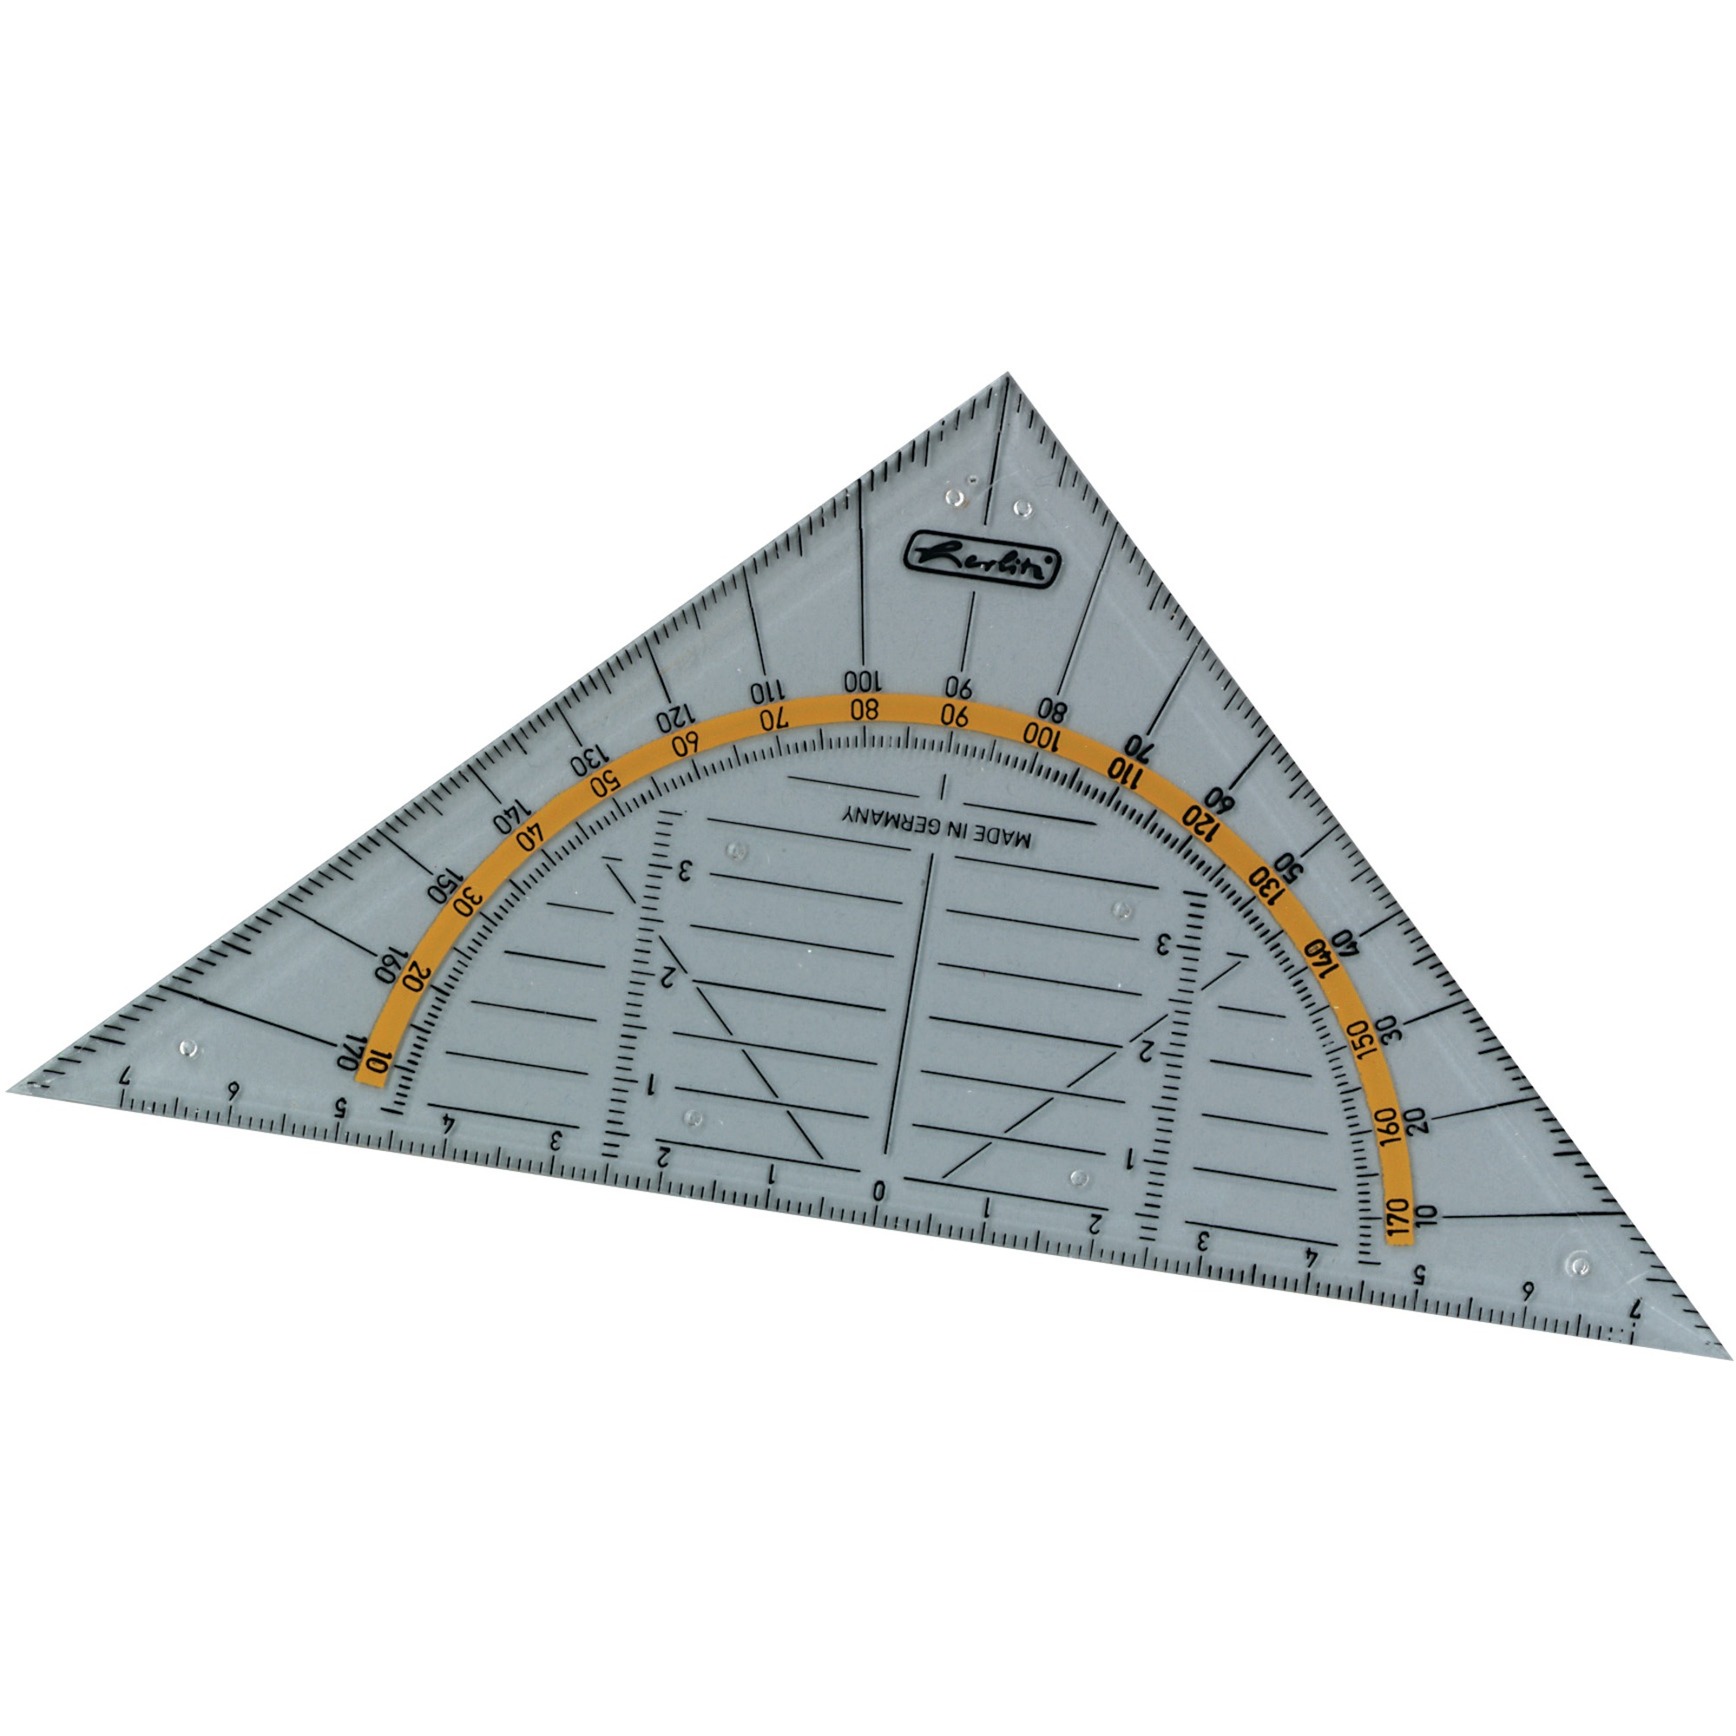 Image of Alternate - Geo-Dreieck aus Kunststoff 16 Zentimeter, Geodreieck online einkaufen bei Alternate